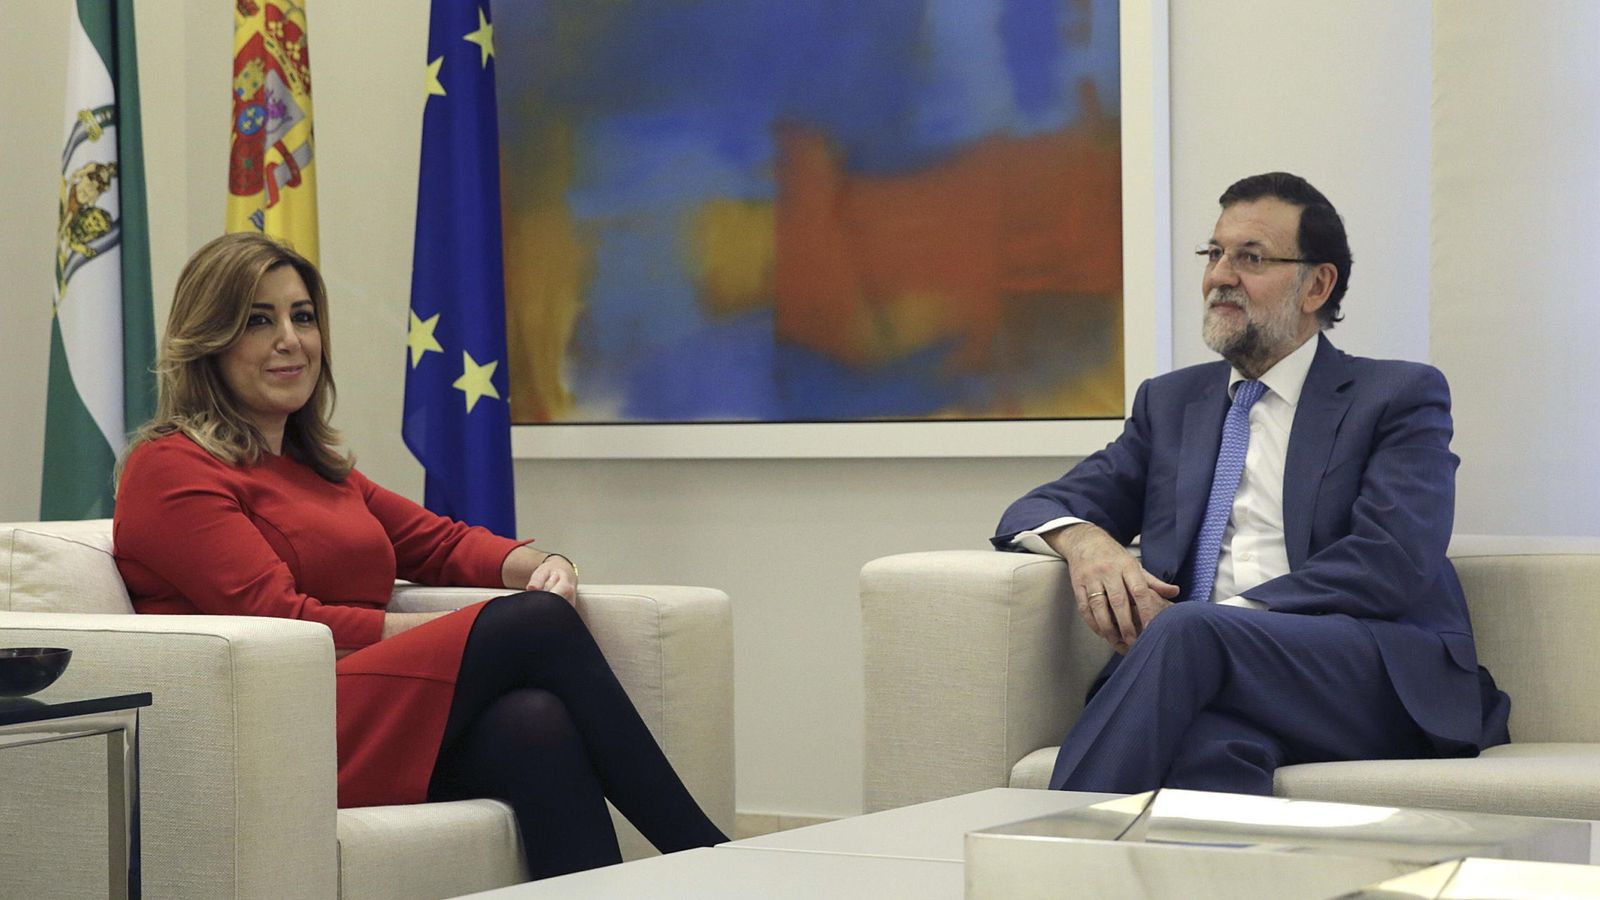 Foto: Rajoy recibe a díaz para analizar posibles inversiones de la UE en andalucía. (Efe)